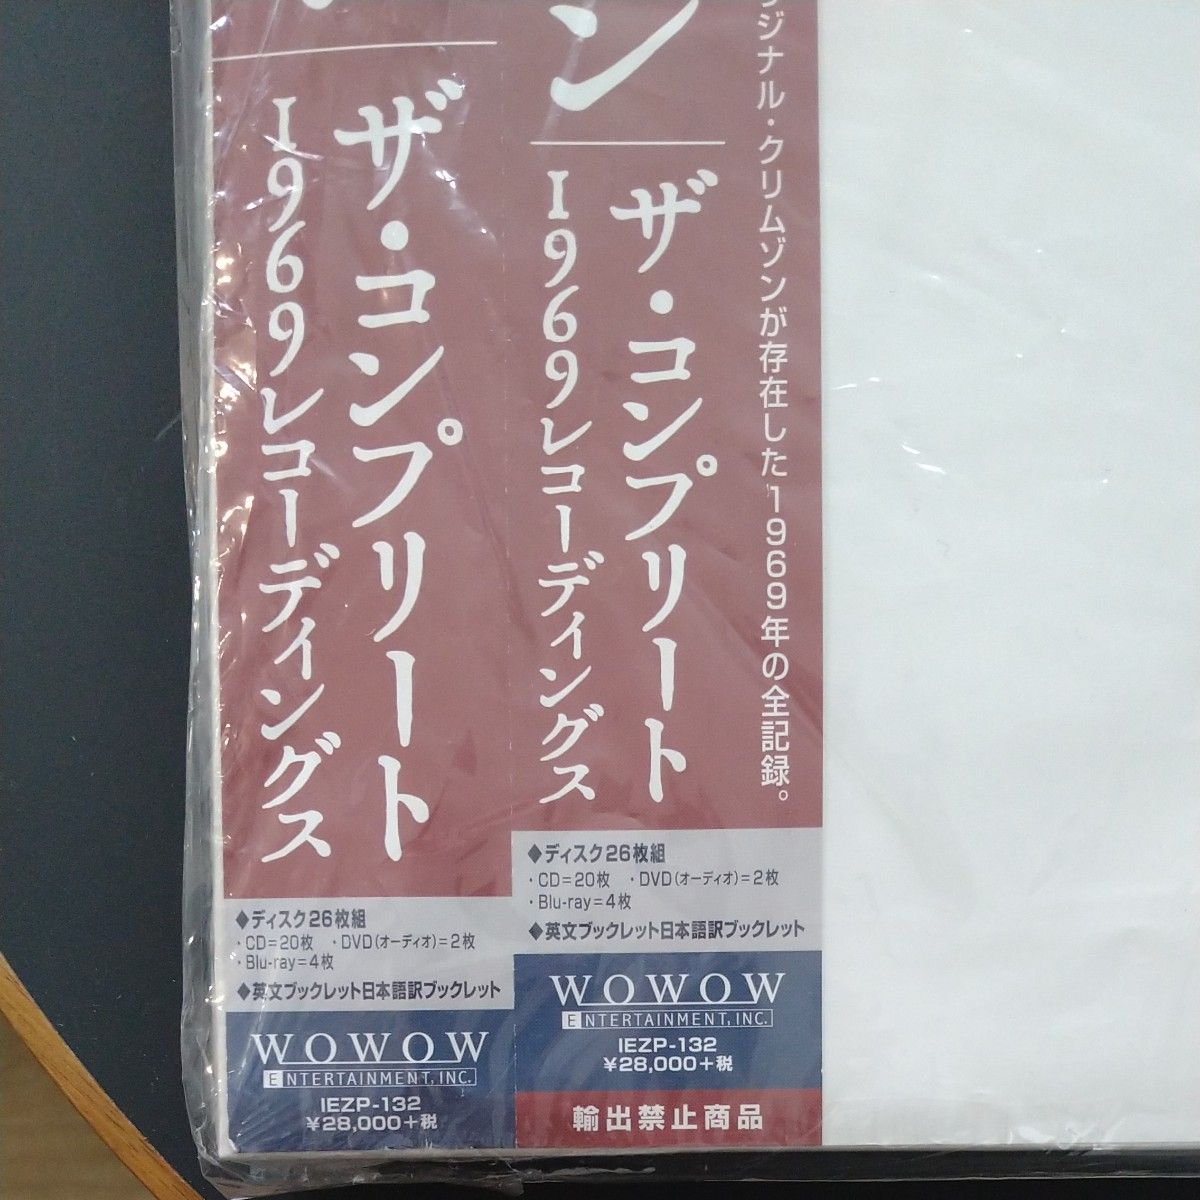 King Crimson ザコンプリート1969レコーディングス 日本アセンブル パッケージ 完全限定盤 26枚組